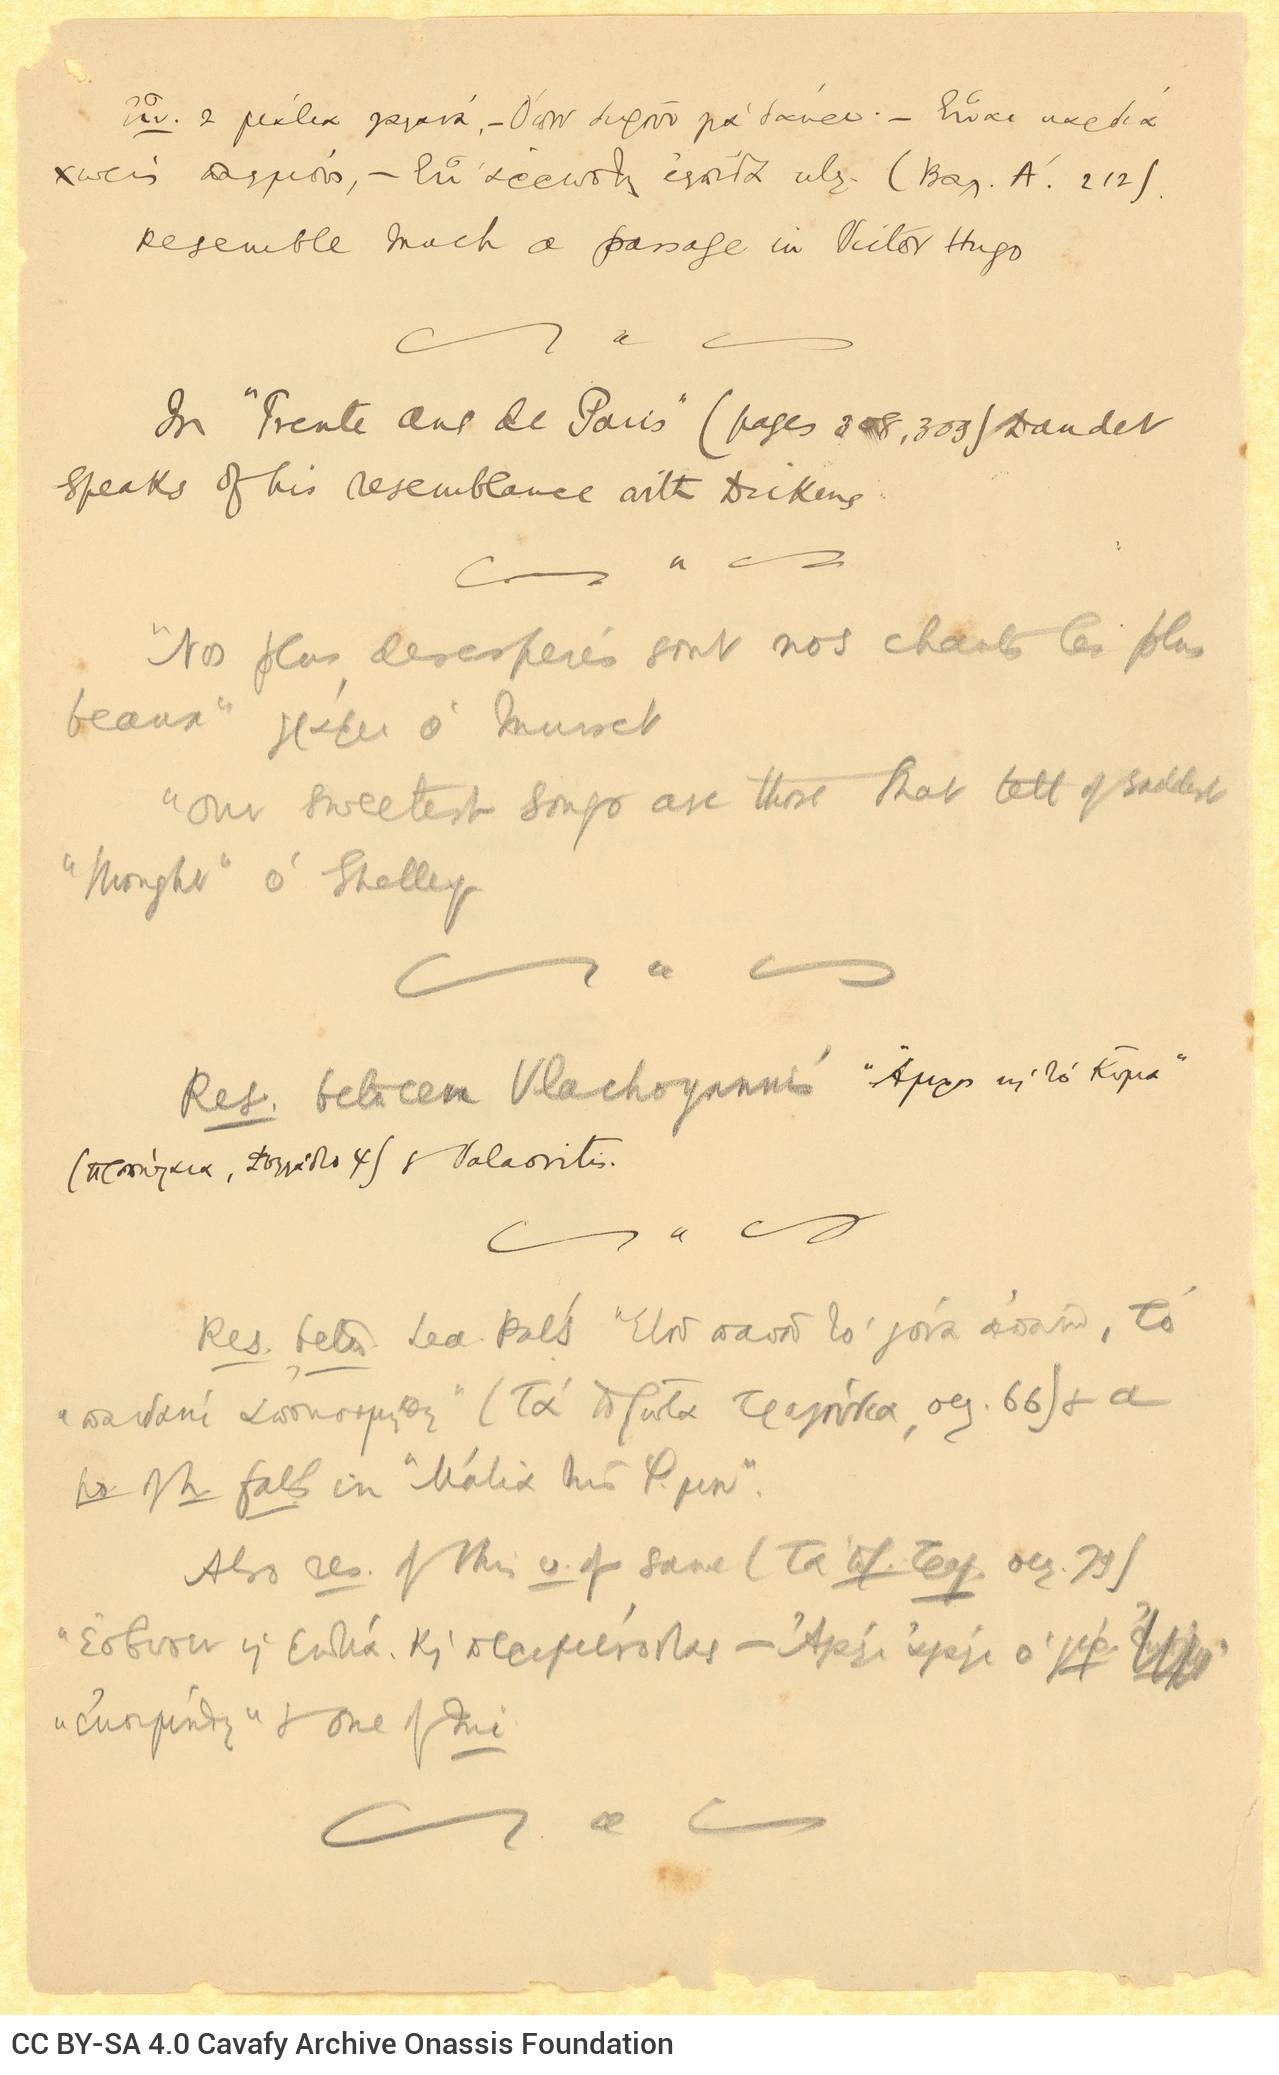 Χειρόγραφες σημειώσεις του Καβάφη στις δύο όψεις δύο φύλλων. Ο ποι�